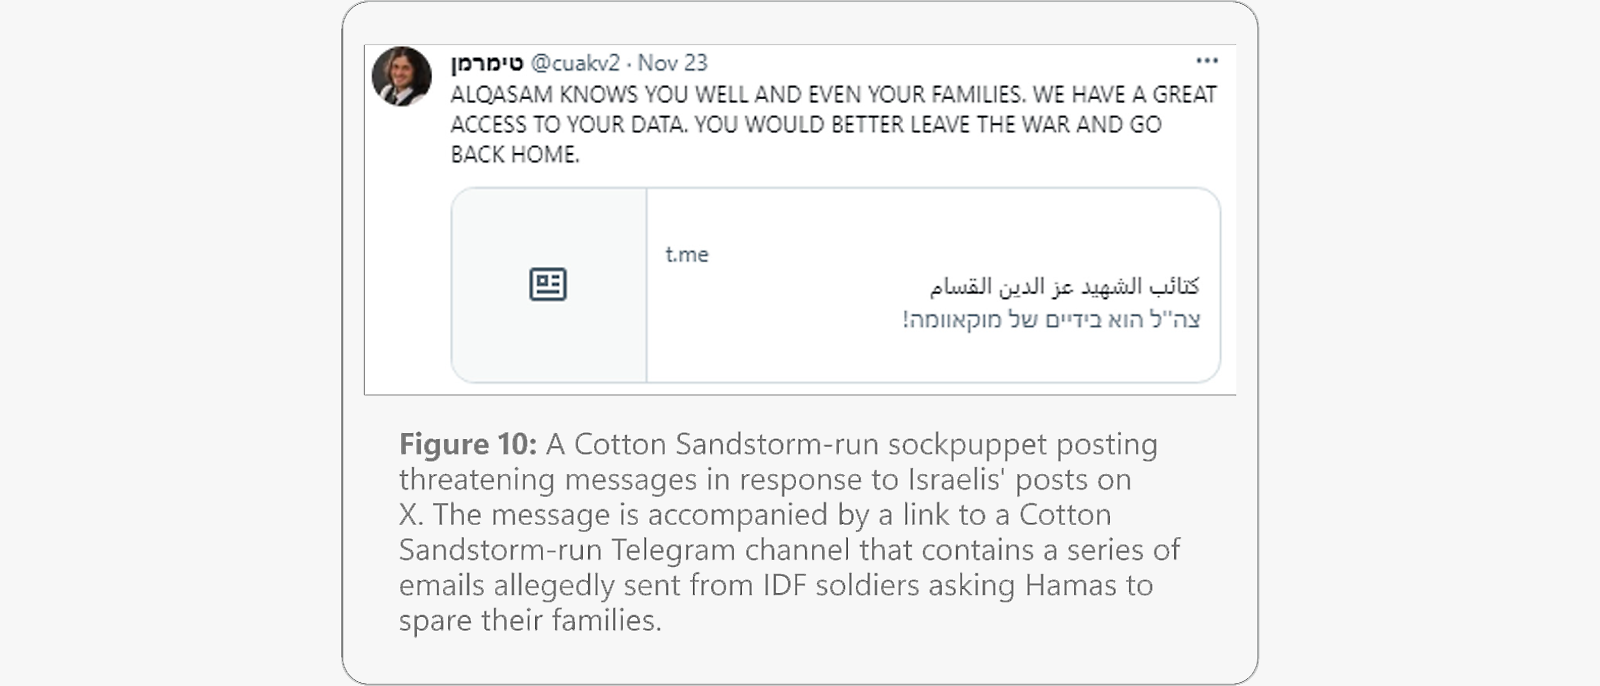 Drohnachricht von einer angeblich von Cotton Sandstorm betriebenen Sockenpuppe, die auf den Zugang zu persönlichen Daten hinweist und zur Beendigung des Kriegsdienstes auffordert.